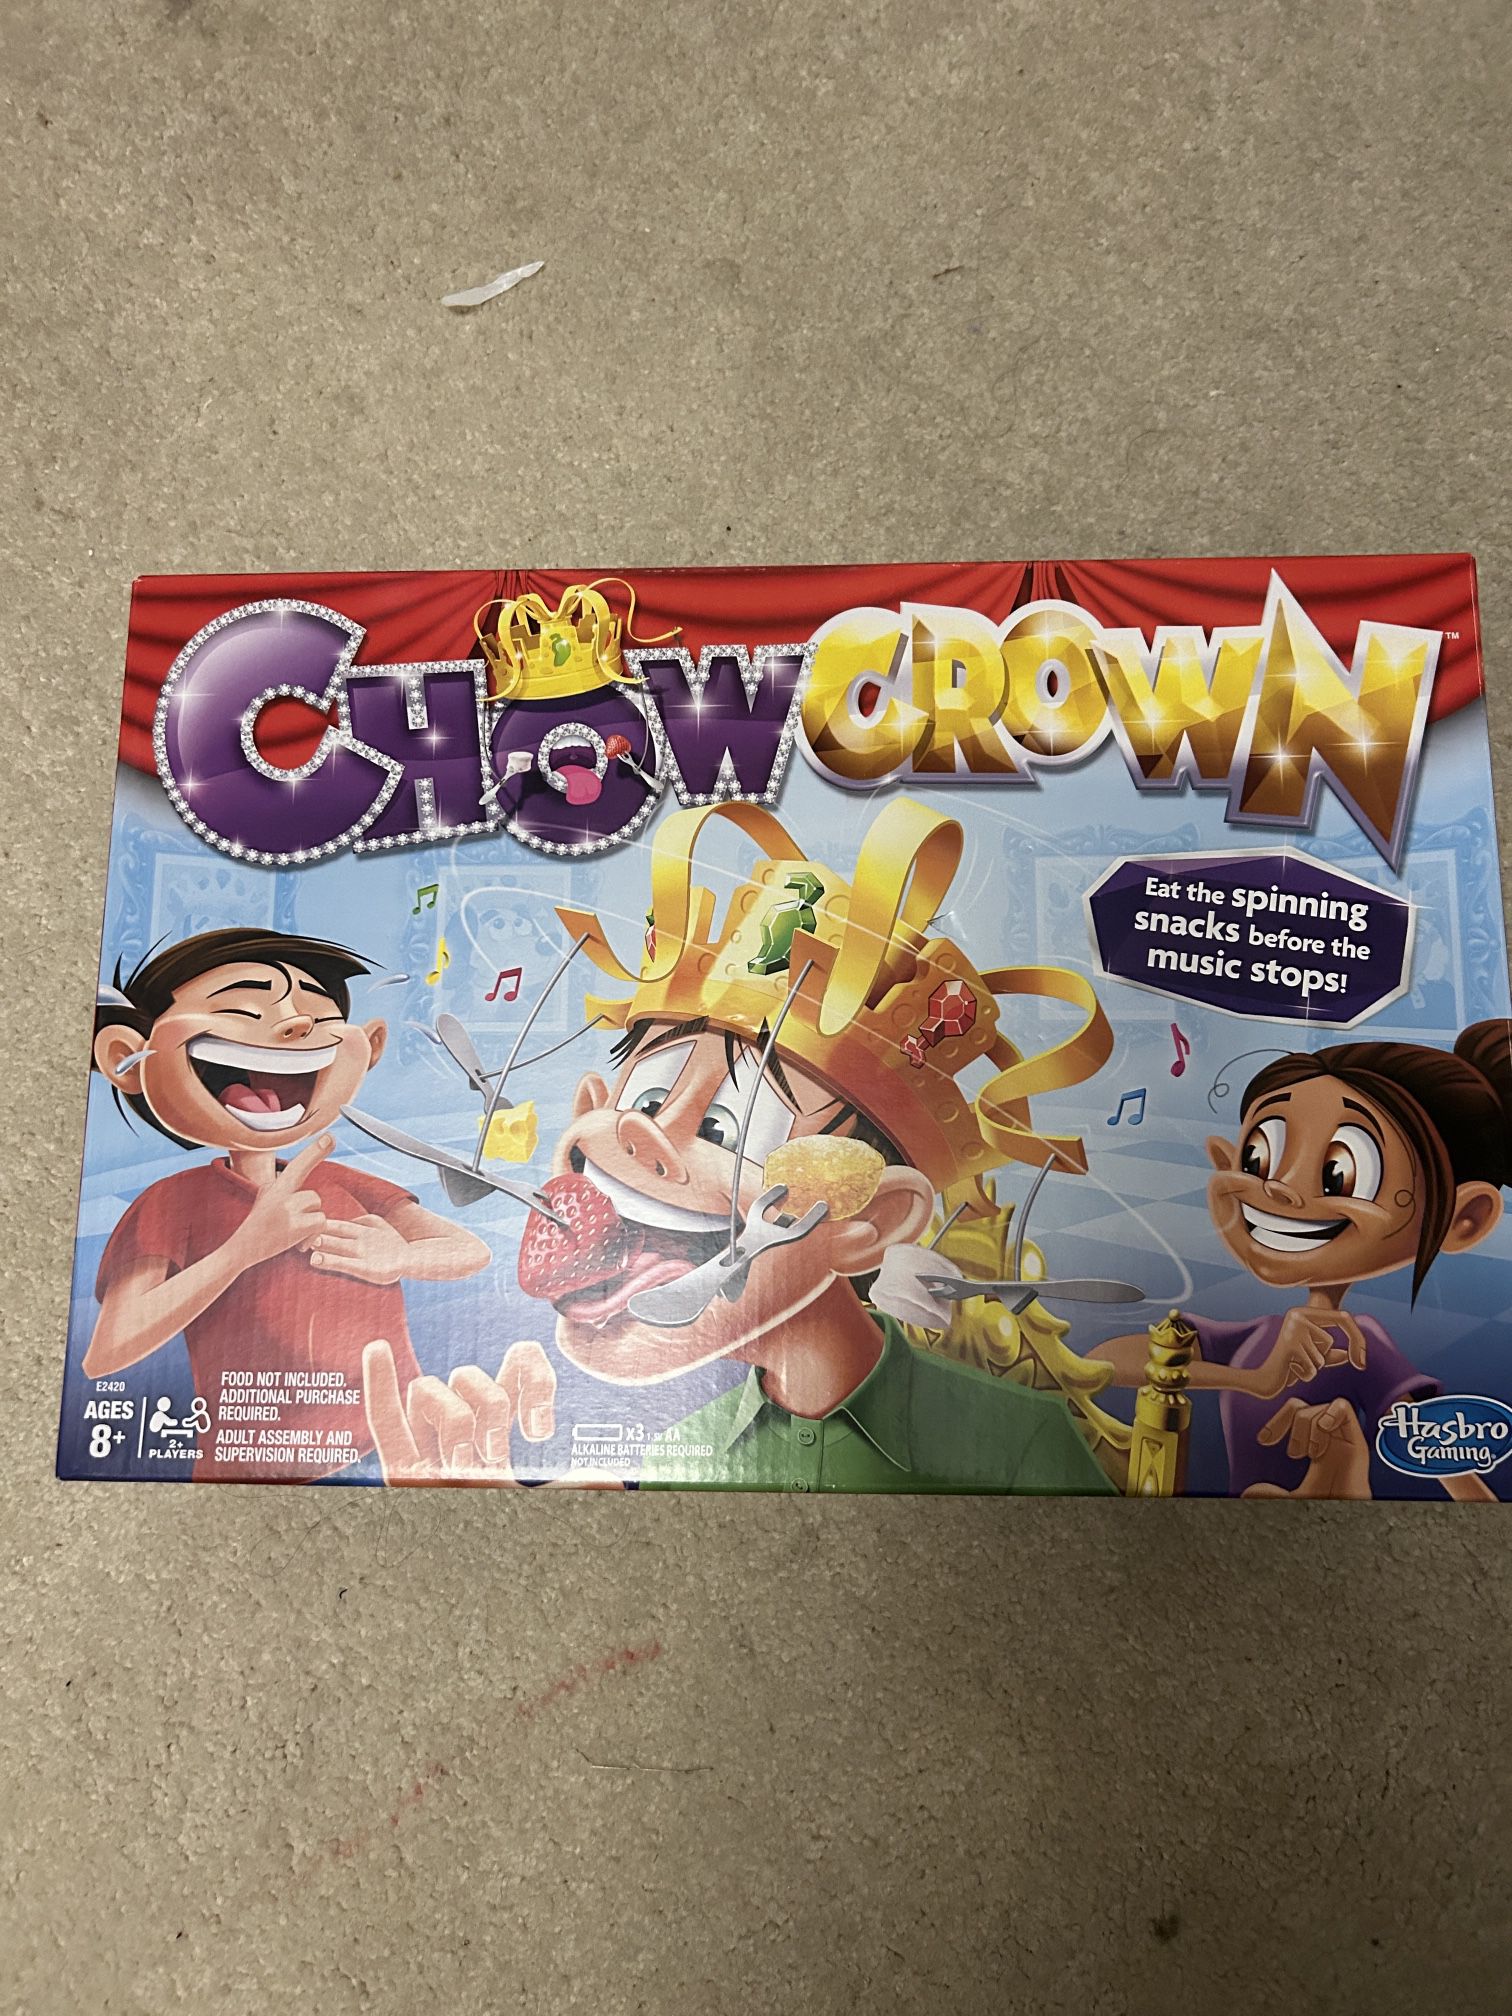 NWT Chowcrown game 